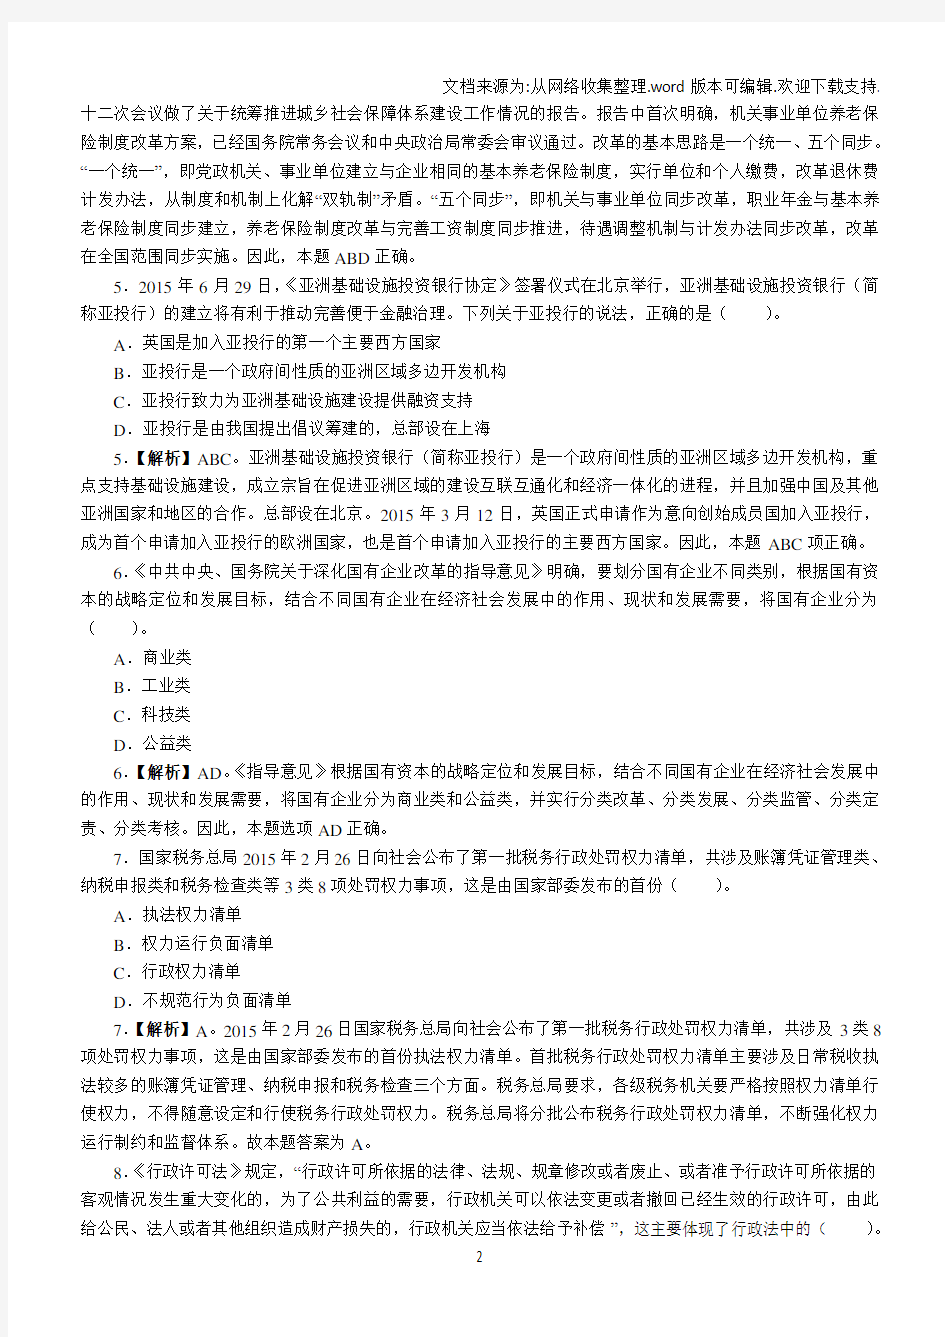 2016年上海公务员考试行测真题(A卷)